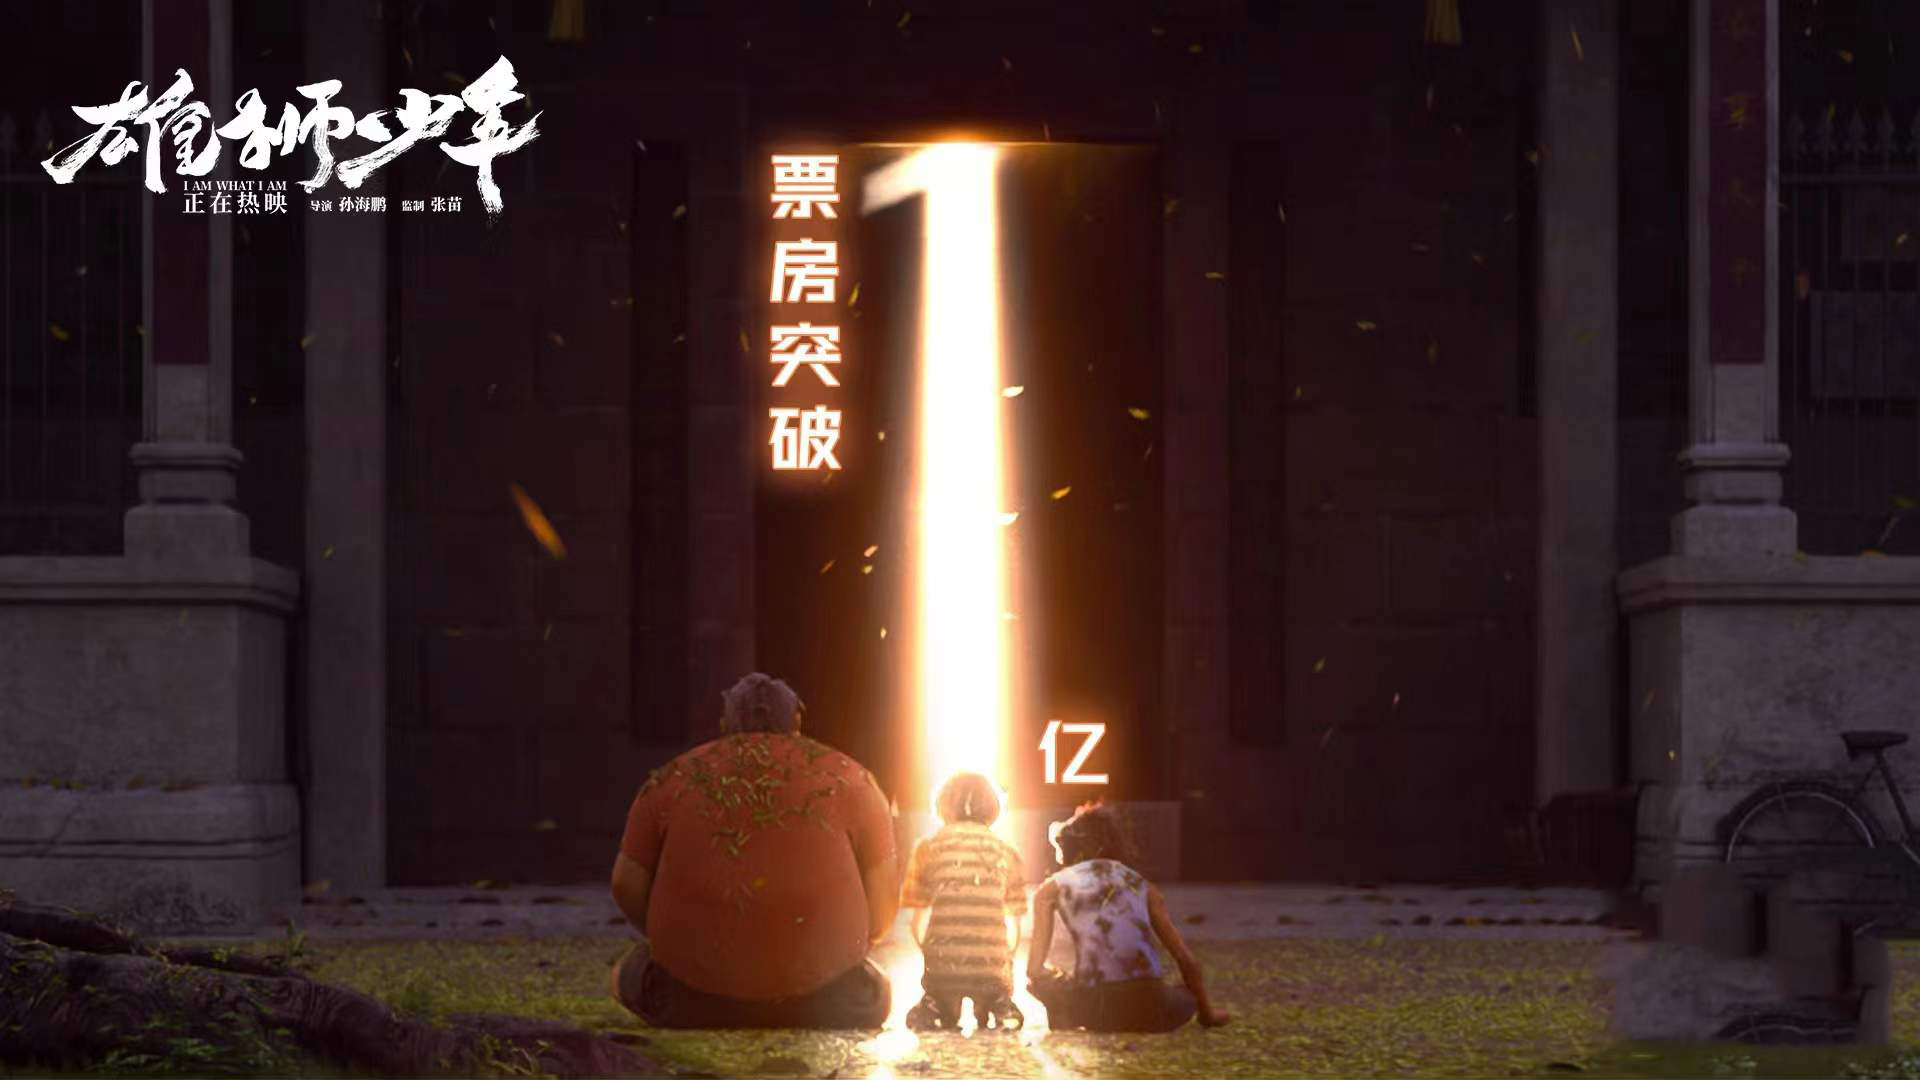 国产动画《雄狮少年》正在上映第2个周6末于破亿